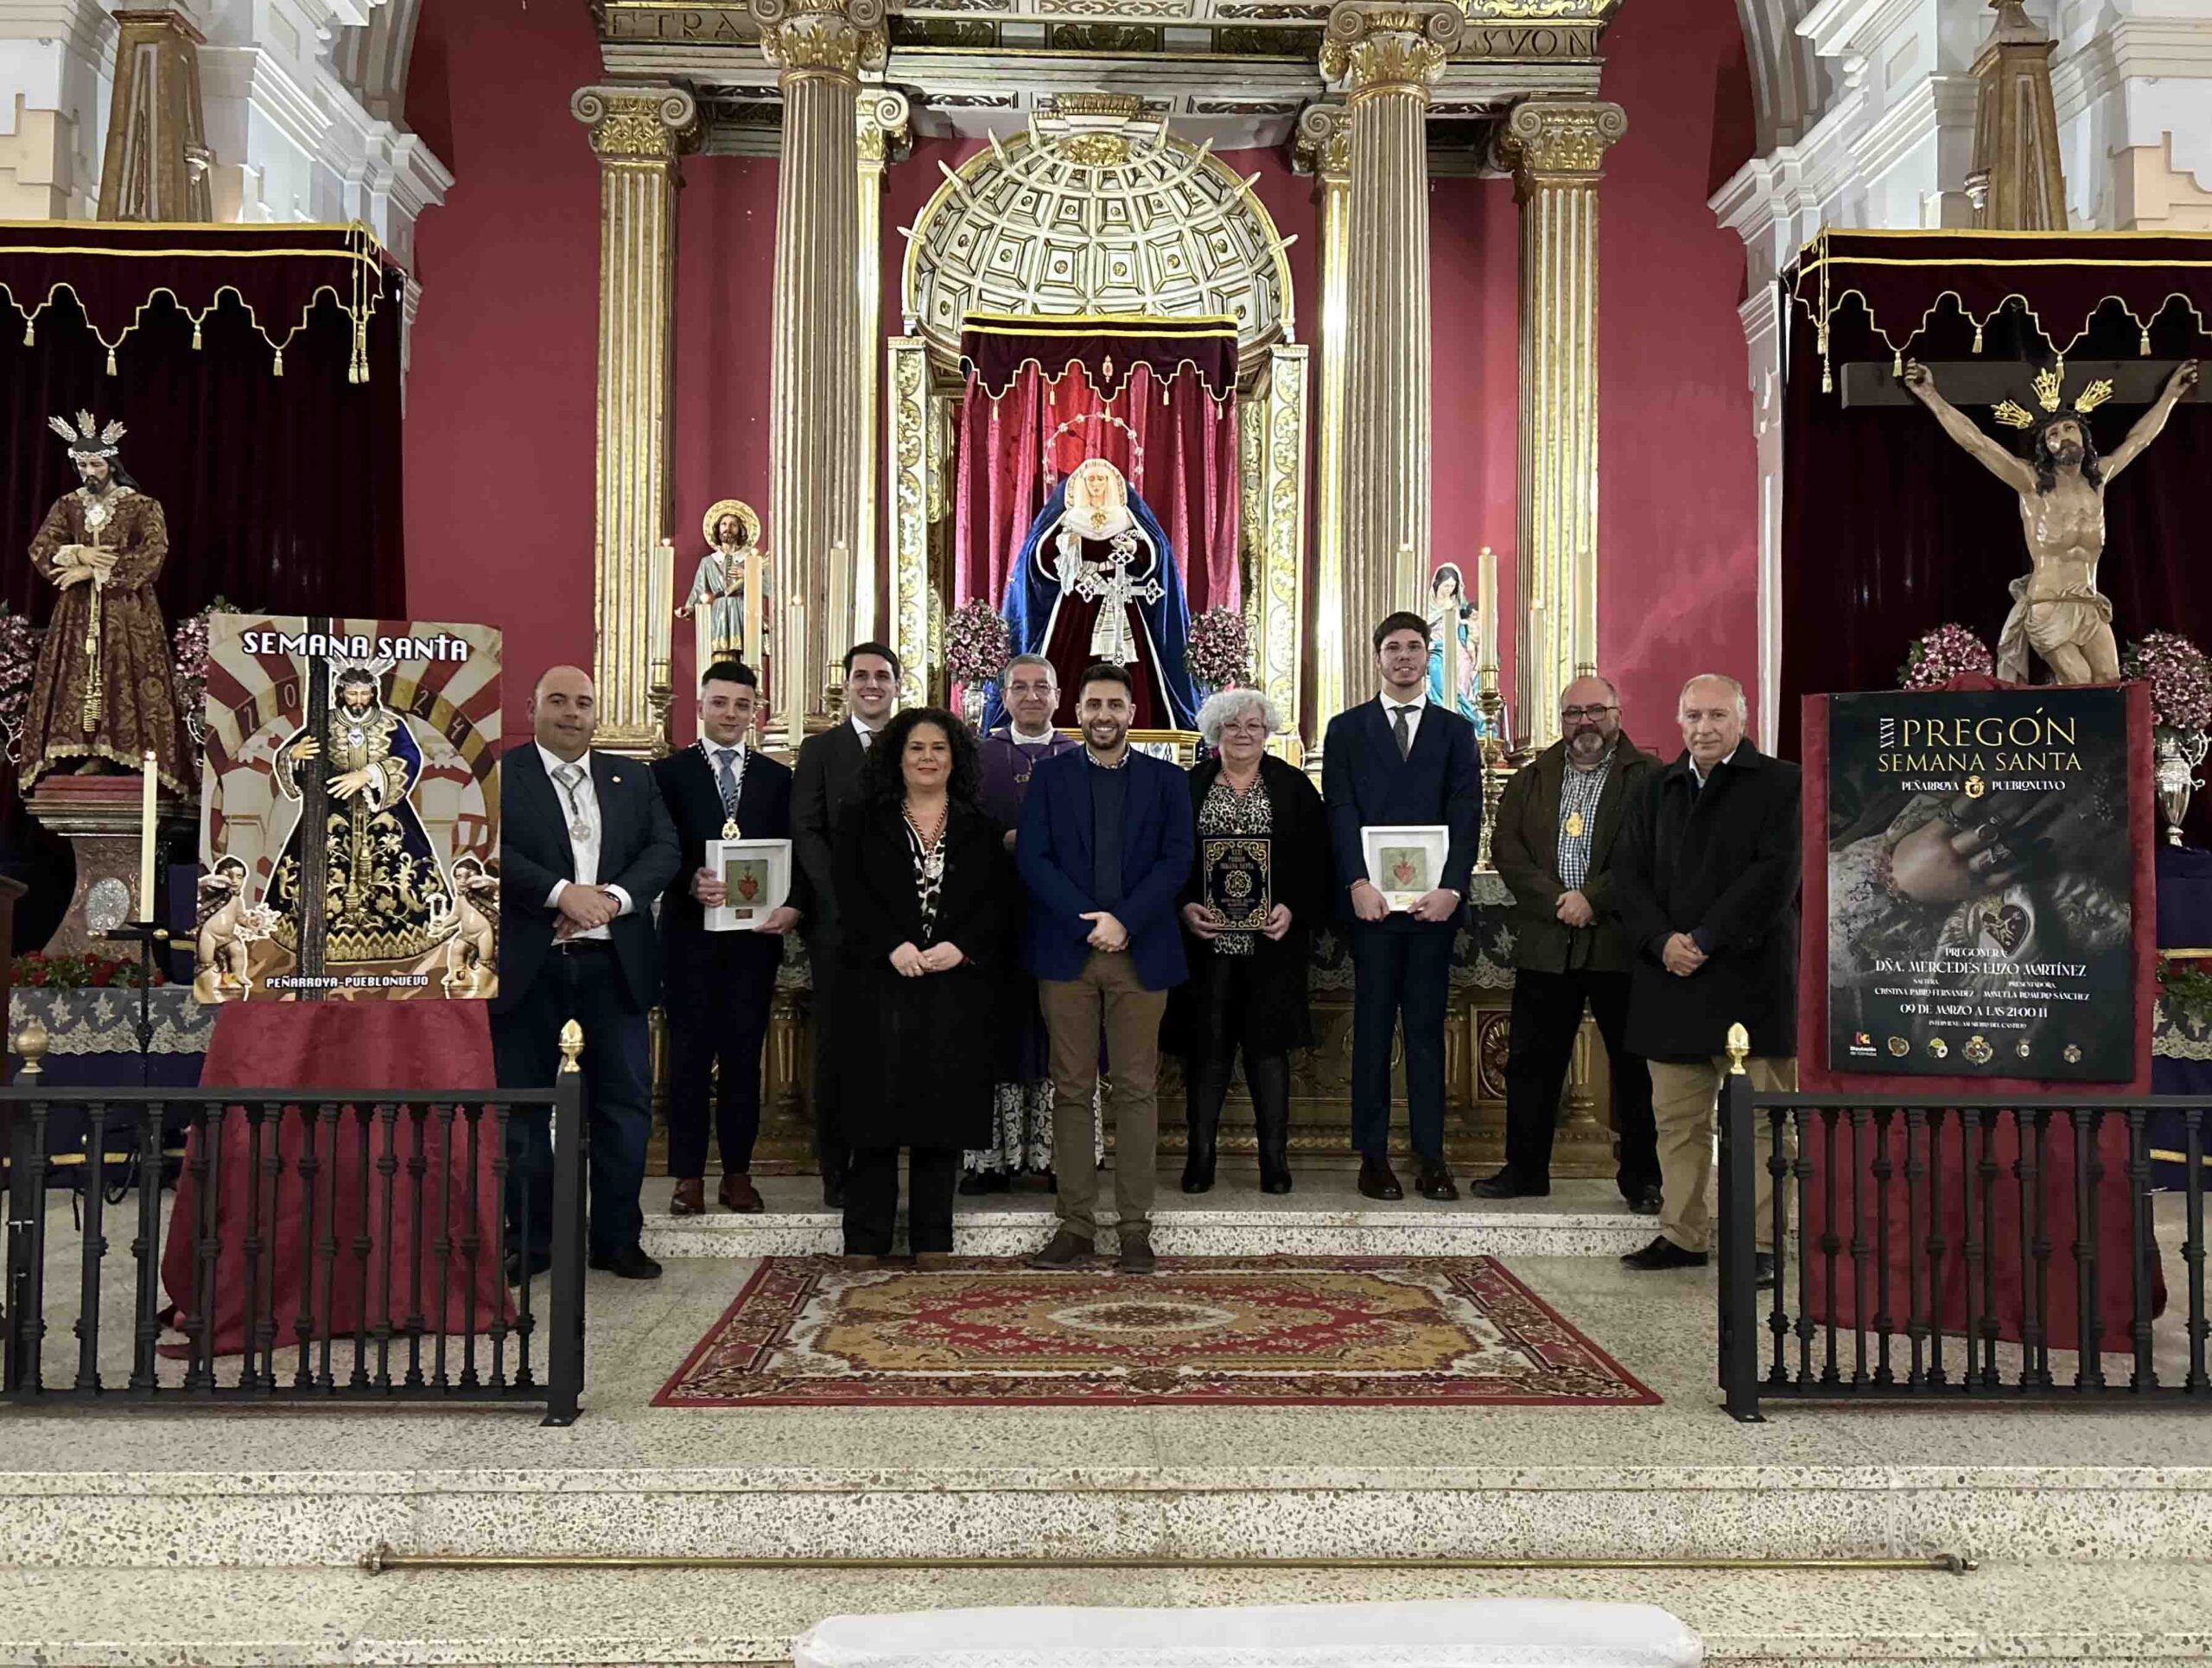 Presentación de los carteles oficiales de Semana Santa y del XXXI Pregón en Peñarroya-Pueblonuevo